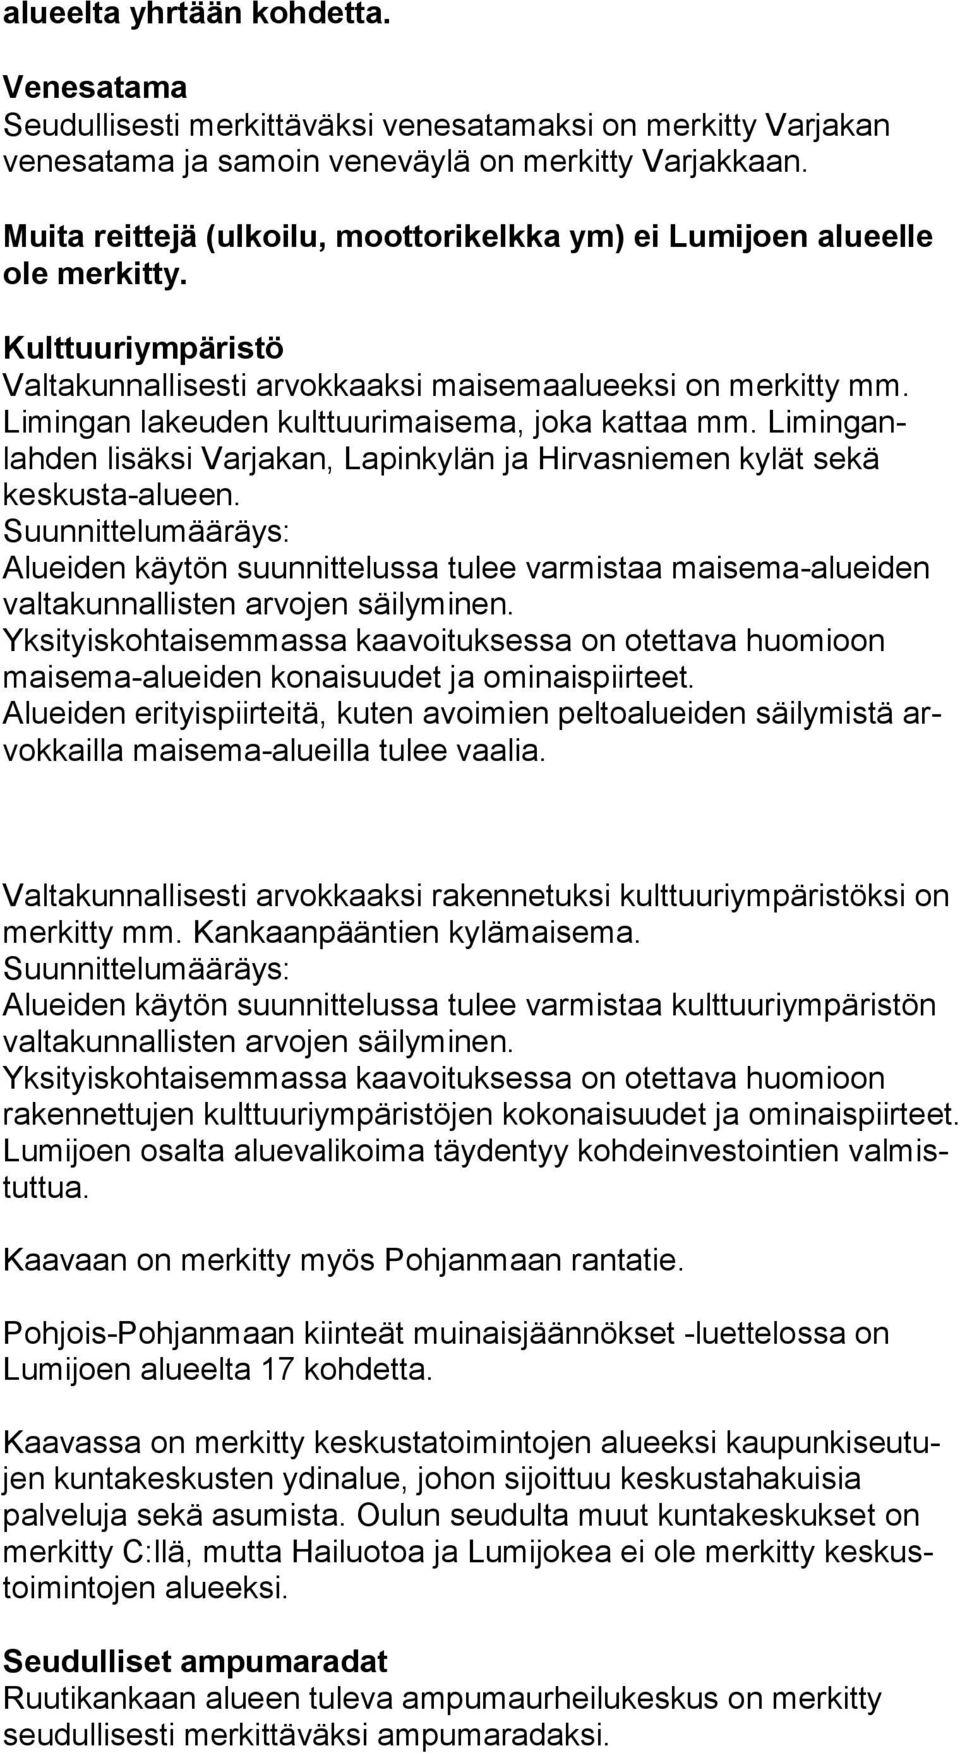 Limingan lakeuden kulttuurimaisema, joka kattaa mm. Liminganlahden lisäksi Varjakan, Lapinkylän ja Hirvasniemen kylät sekä keskusta-alueen.